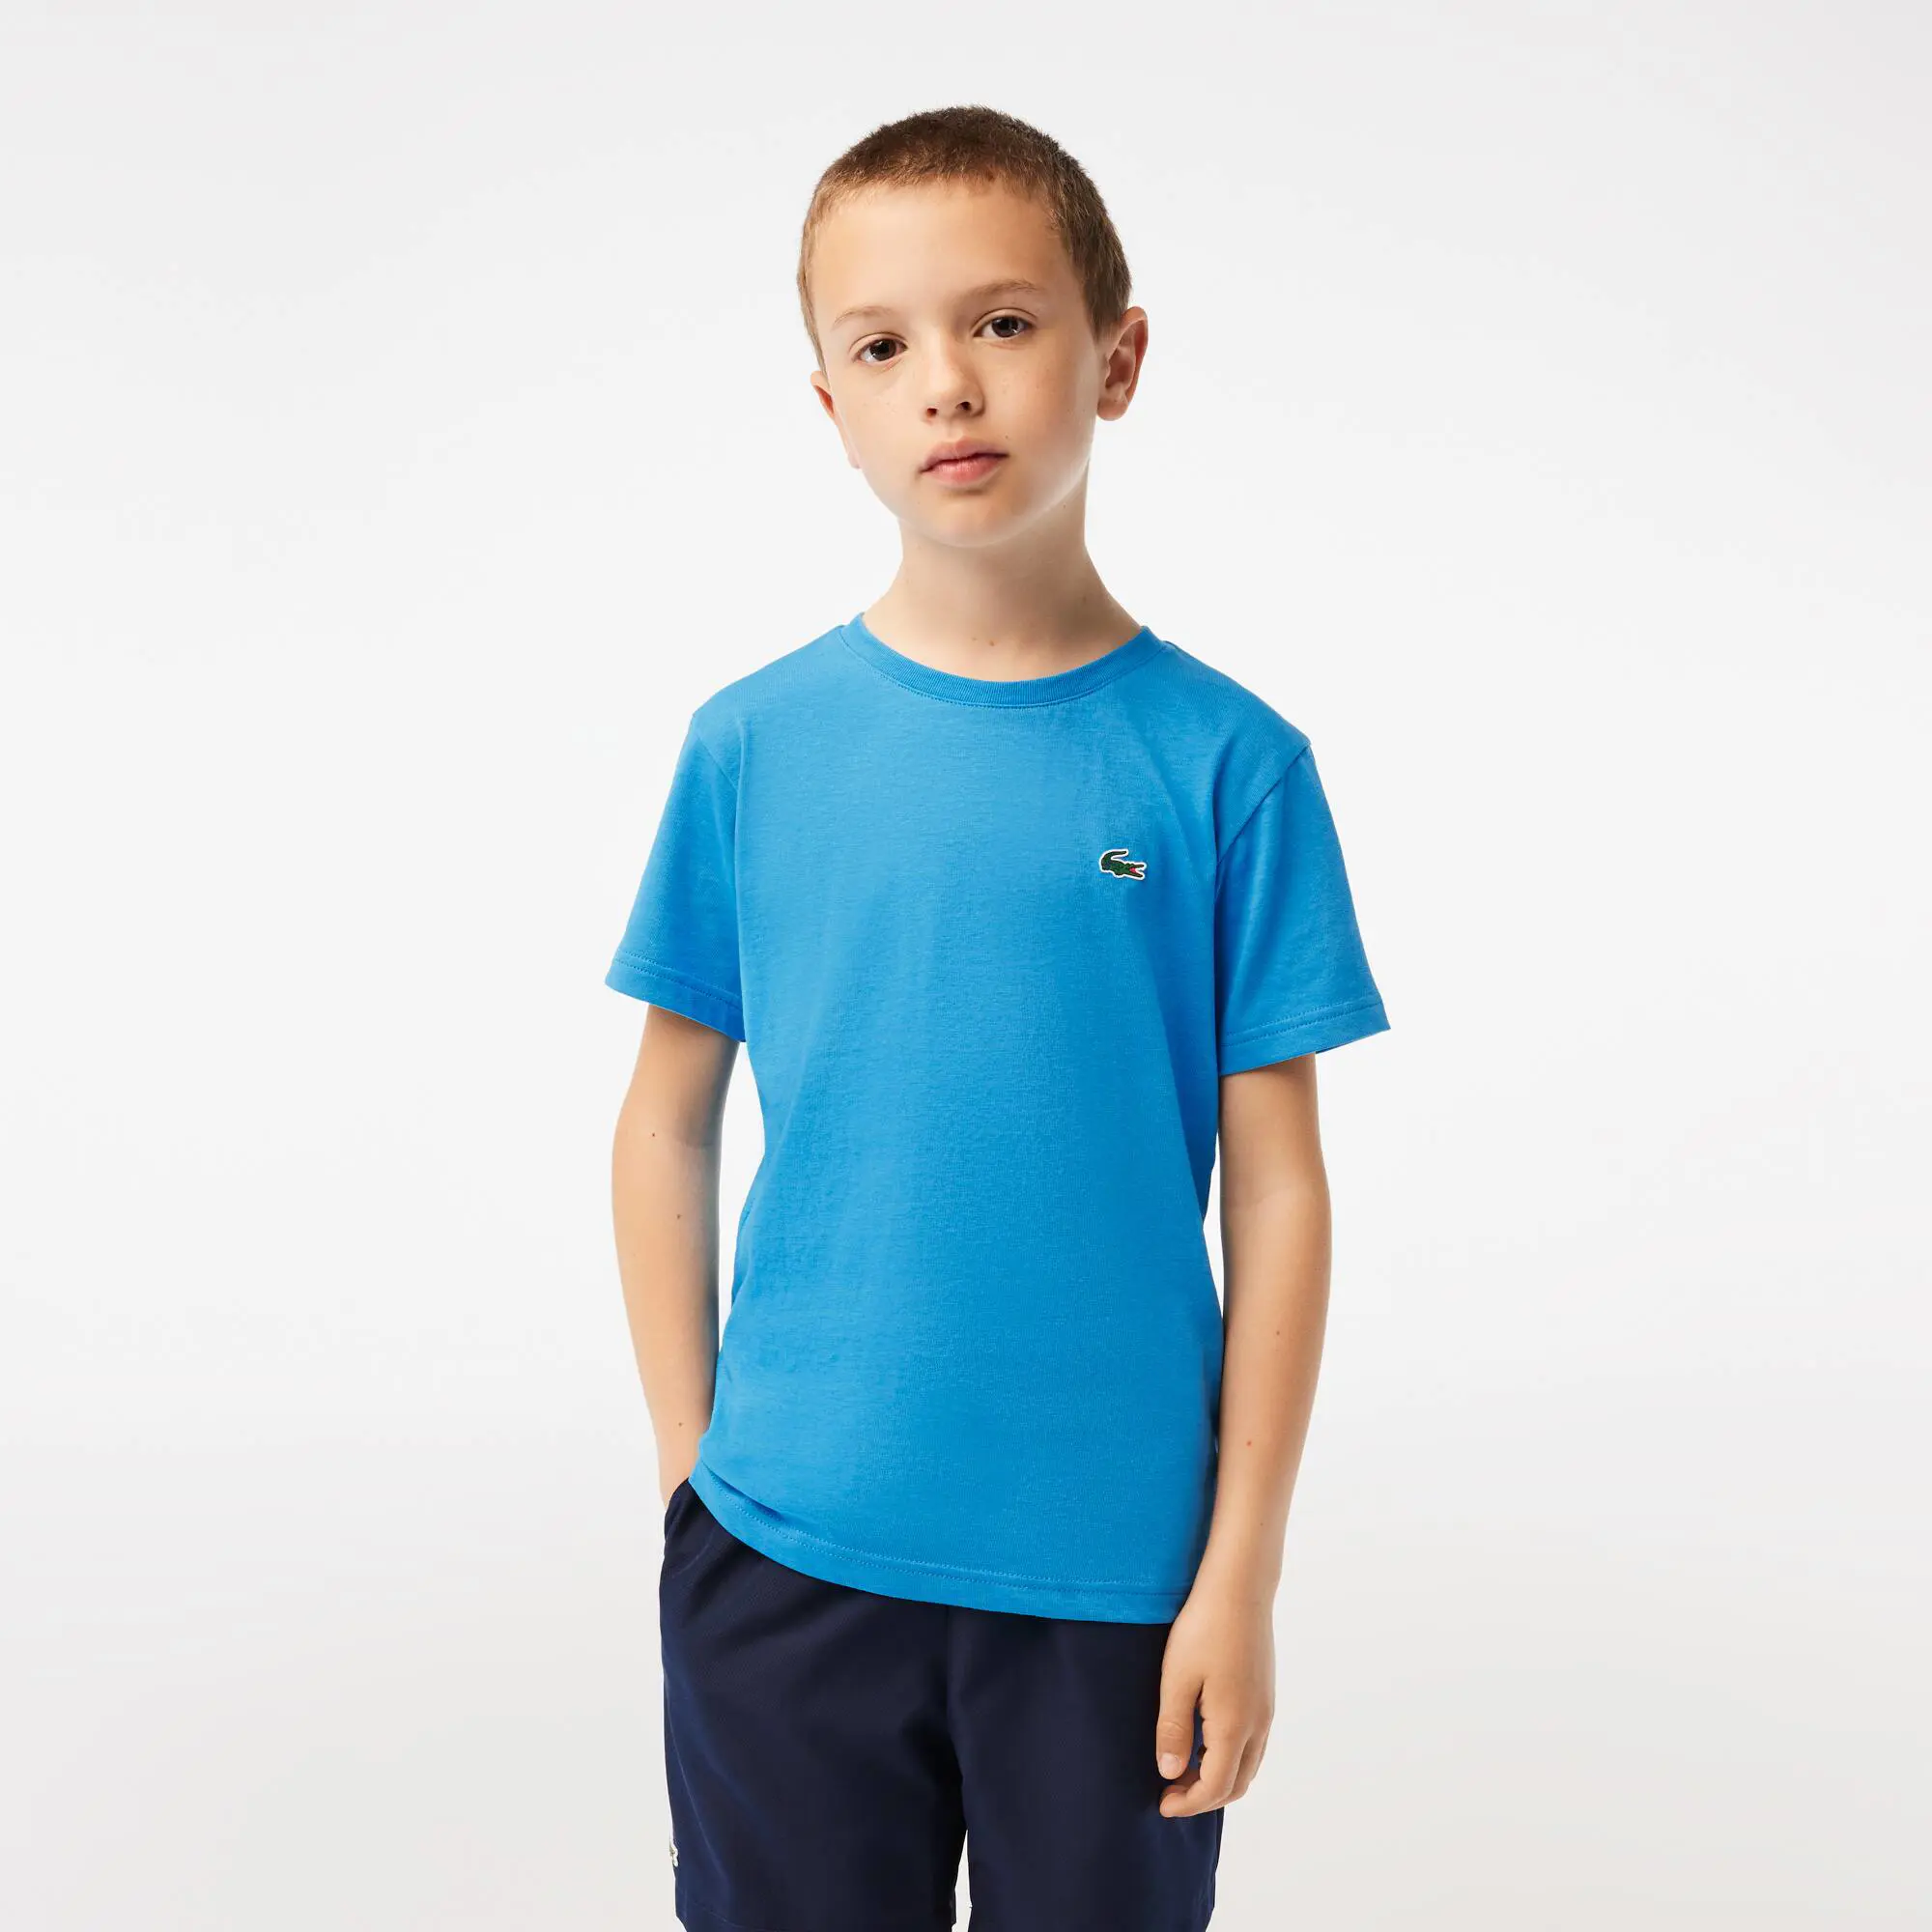 Lacoste Boys' Lacoste SPORT Breathable Cotton Blend T-shirt. 1